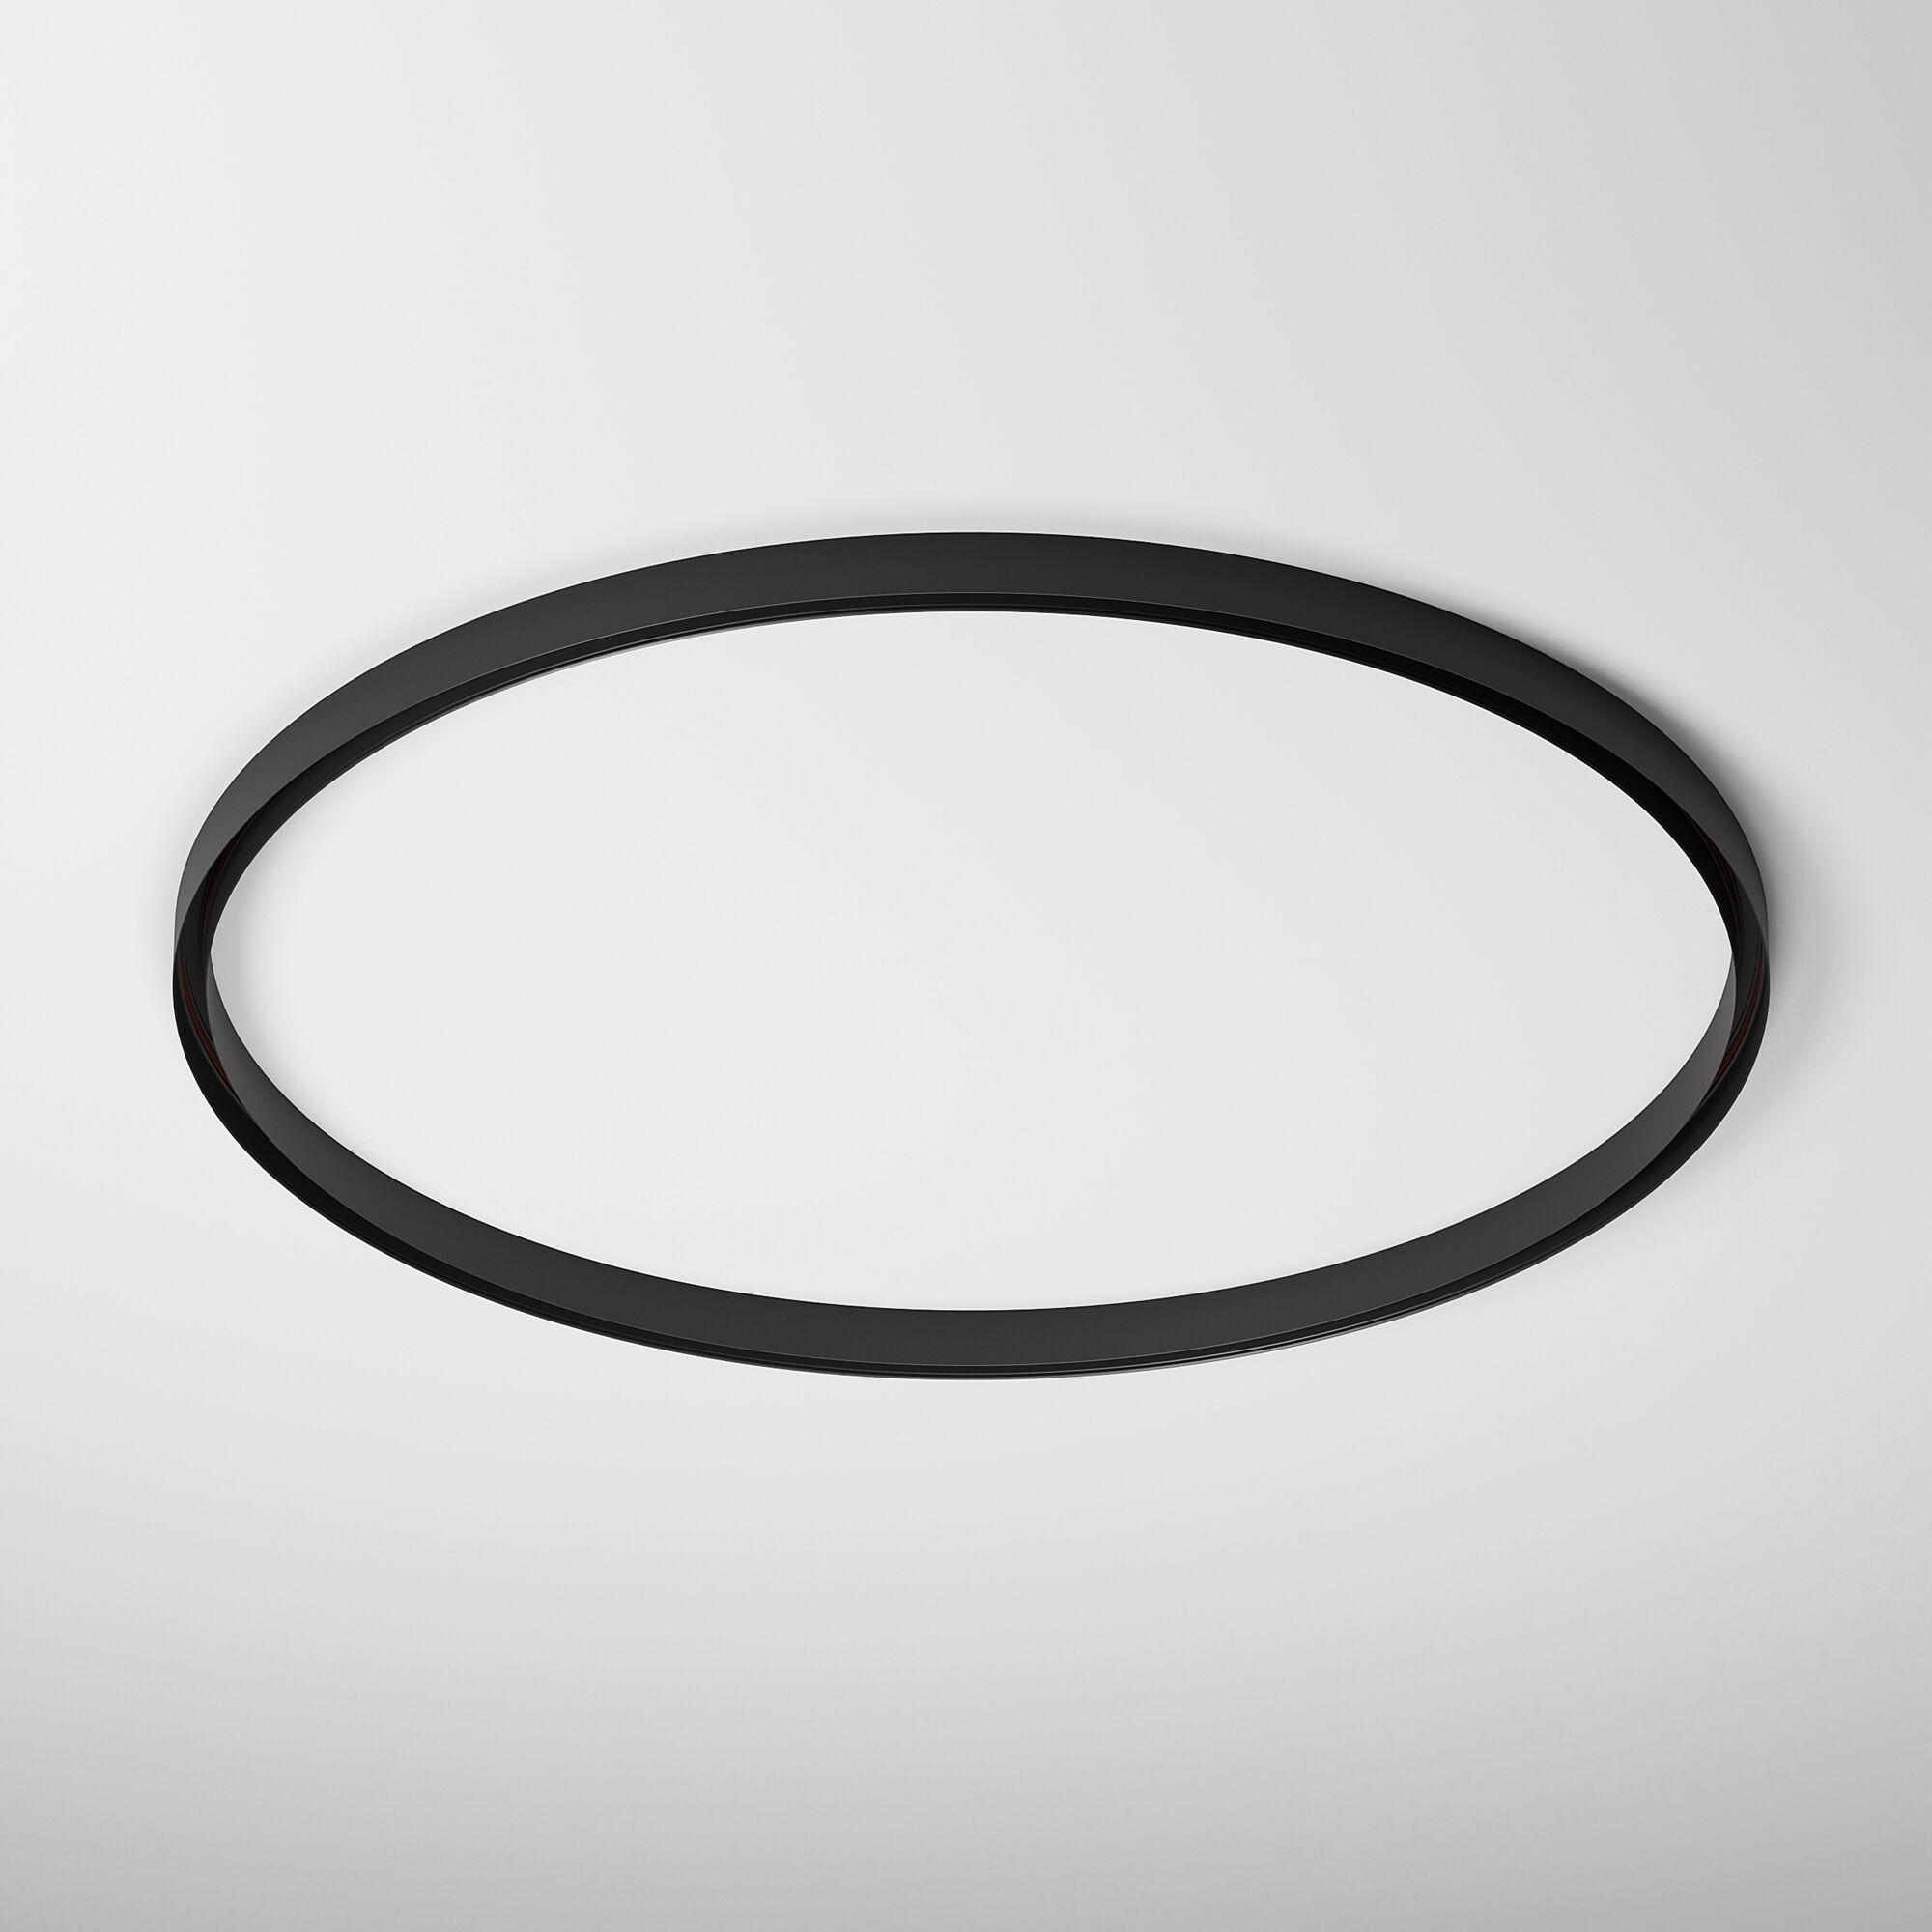 Slim Magnetic Накладной радиусный шинопровод черный ⌀ 1200мм 85161/00